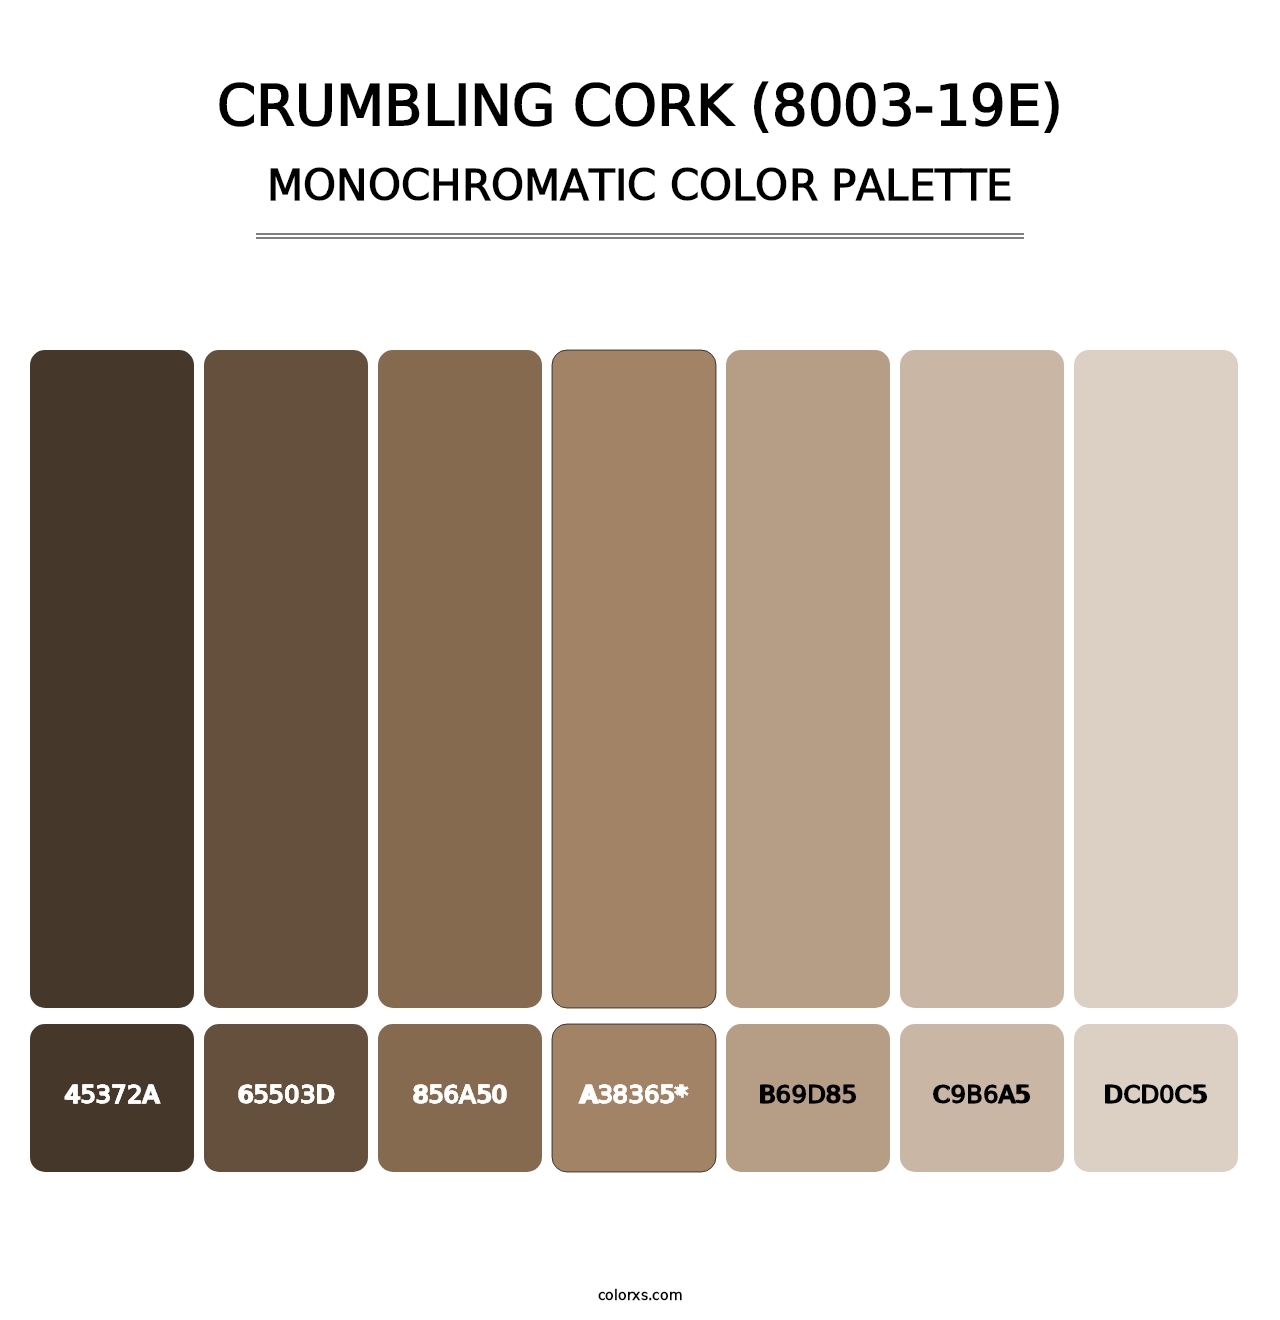 Crumbling Cork (8003-19E) - Monochromatic Color Palette